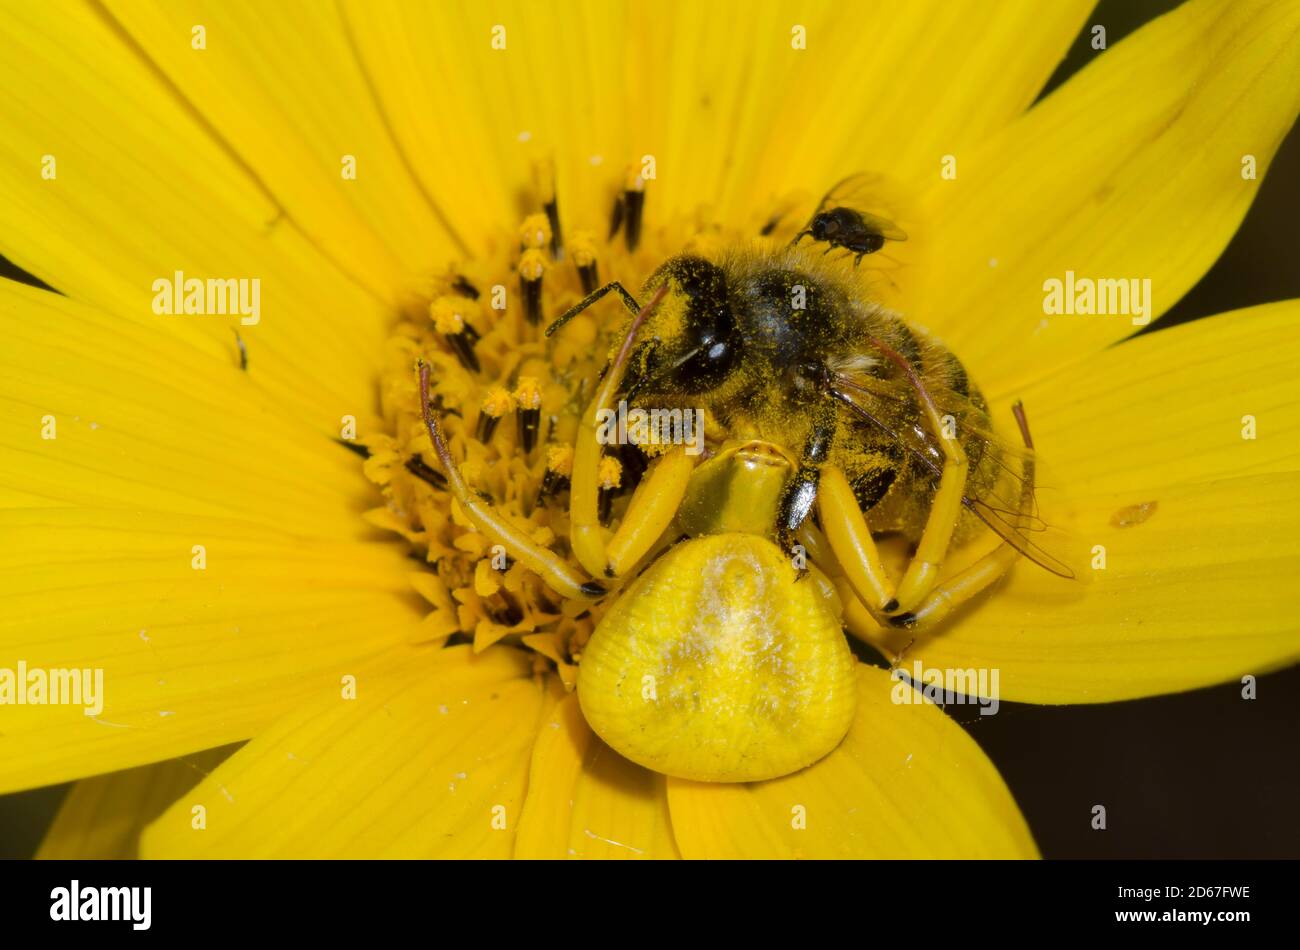 Whitebanded Crab Spider,  Misumenoides formosipes, feeding on captured Honey Bee, Apis mellifera, on Maximilian sunflower, Helianthus maximiliani Stock Photo